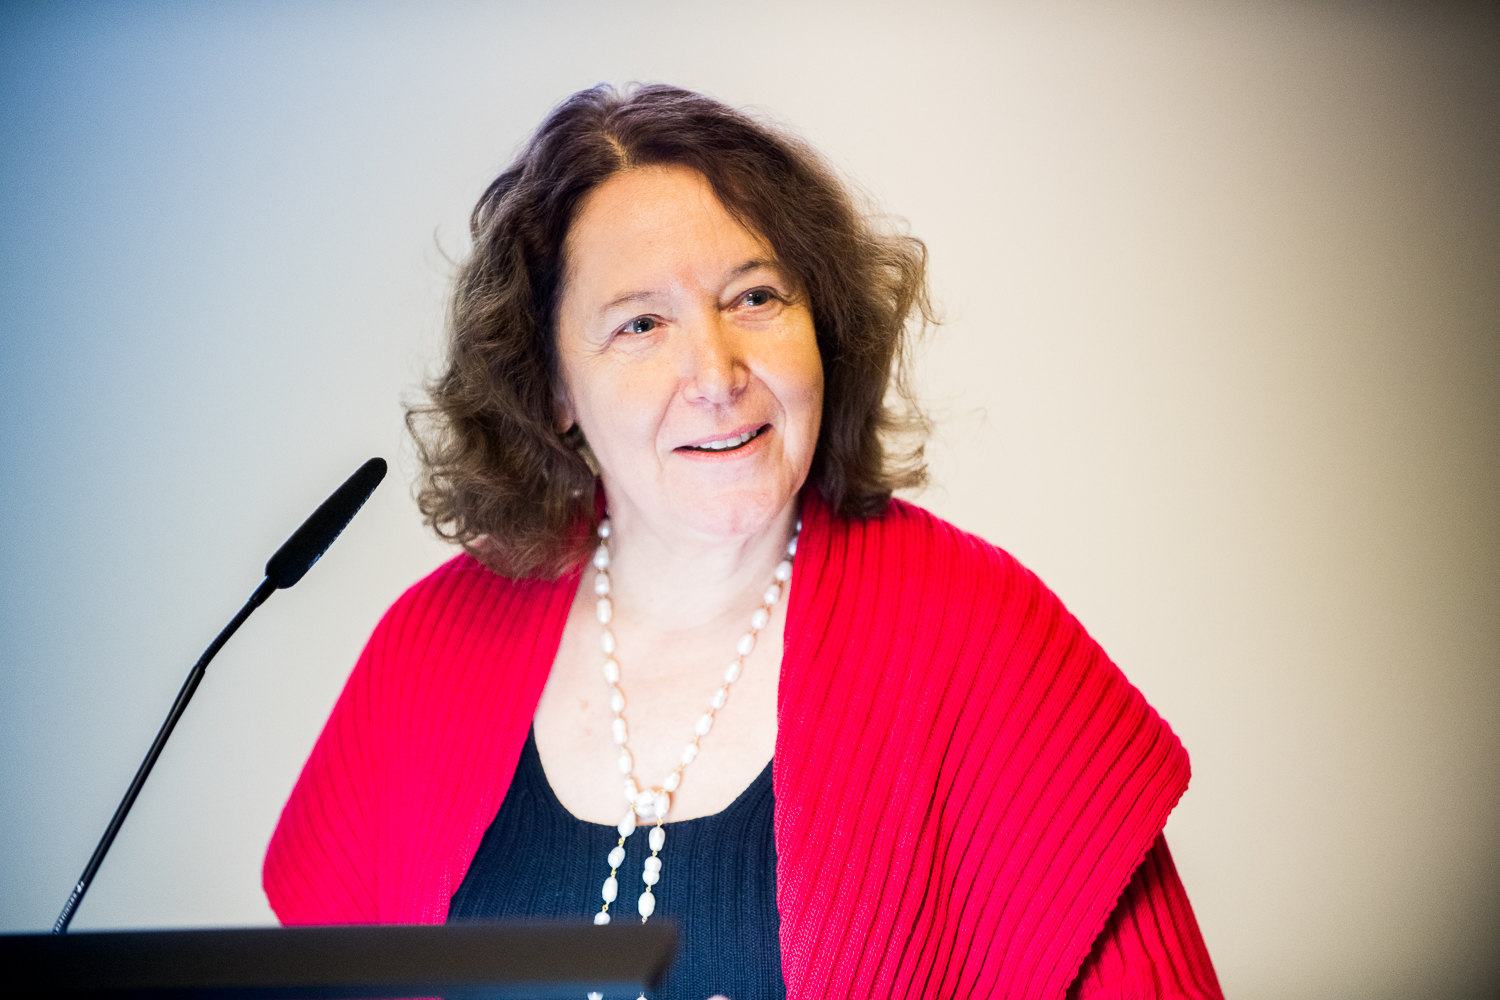 Professorin Eva Bayer-Flückiger, Präsidentin der MHV-Evaluationskommission in Mathematik, Natur- und Ingenieurwissenschaften und Mitglied des Fachausschusses Karrieren